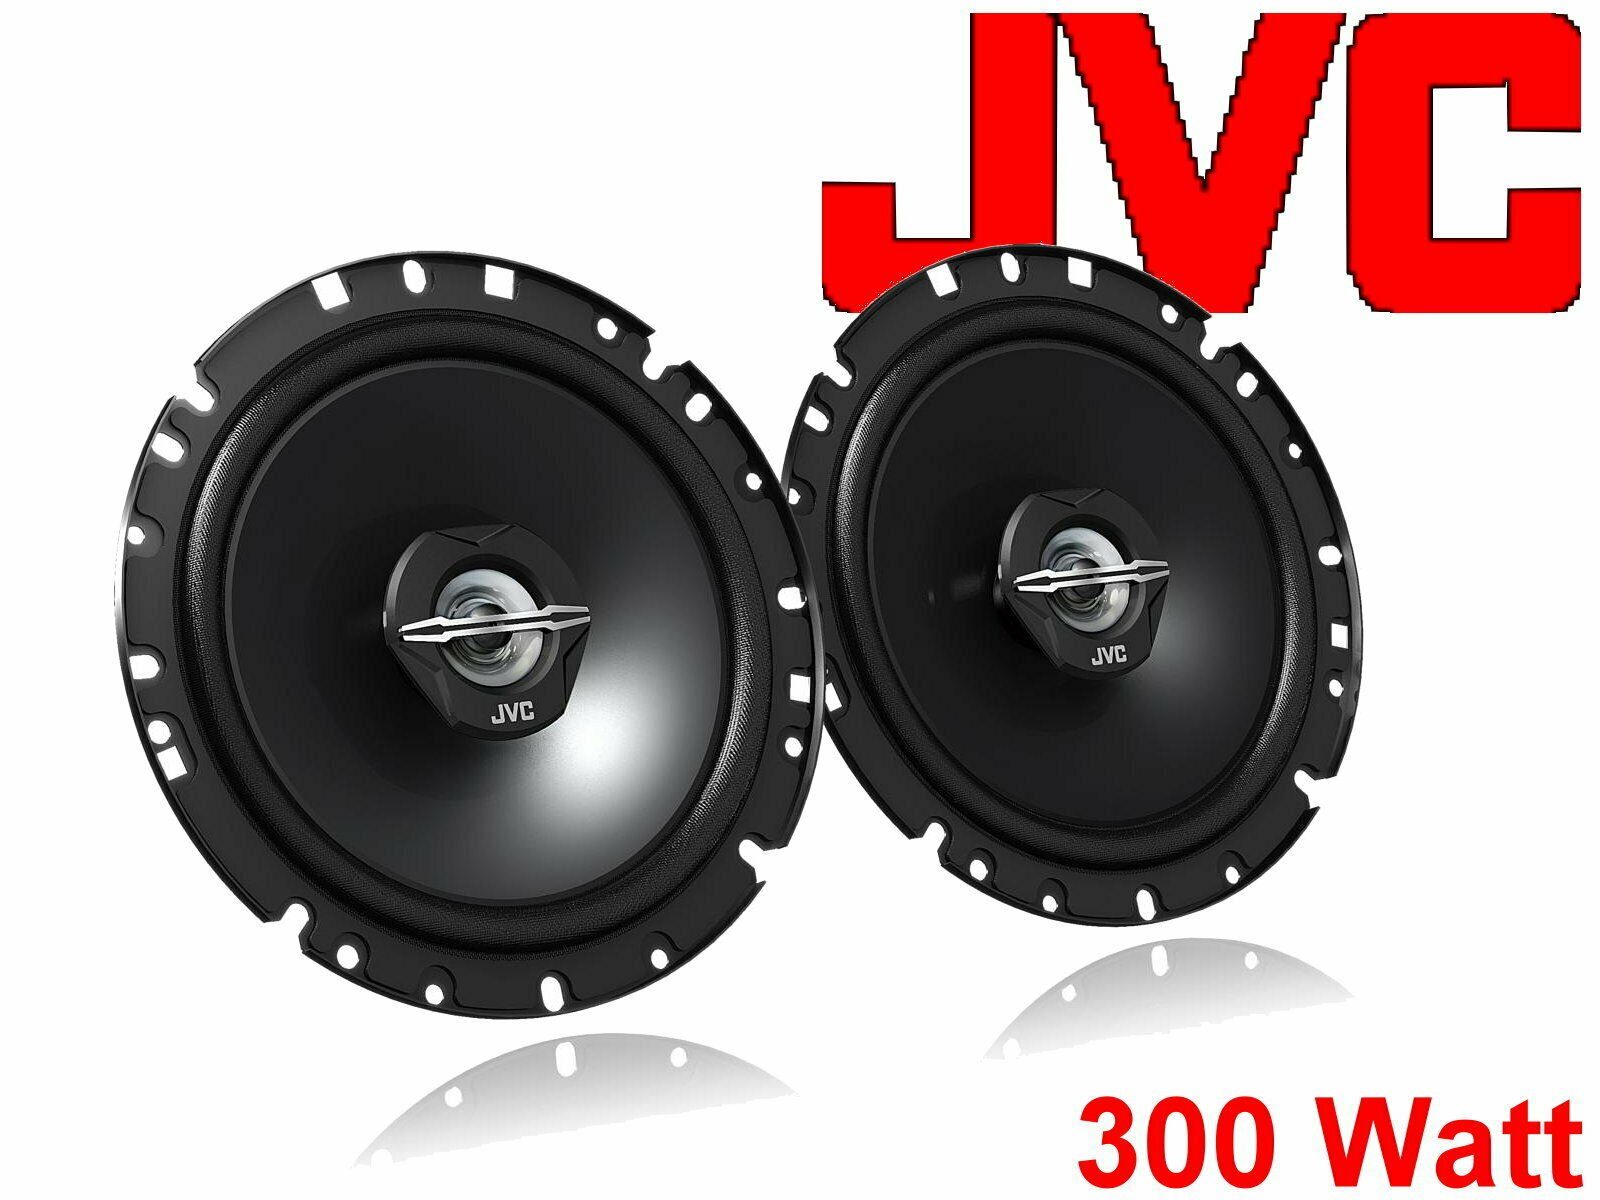 passend Lautsprecher für Auto-Lautsprecher 08 (30 Passat Set JVC W) DSX CC Bj